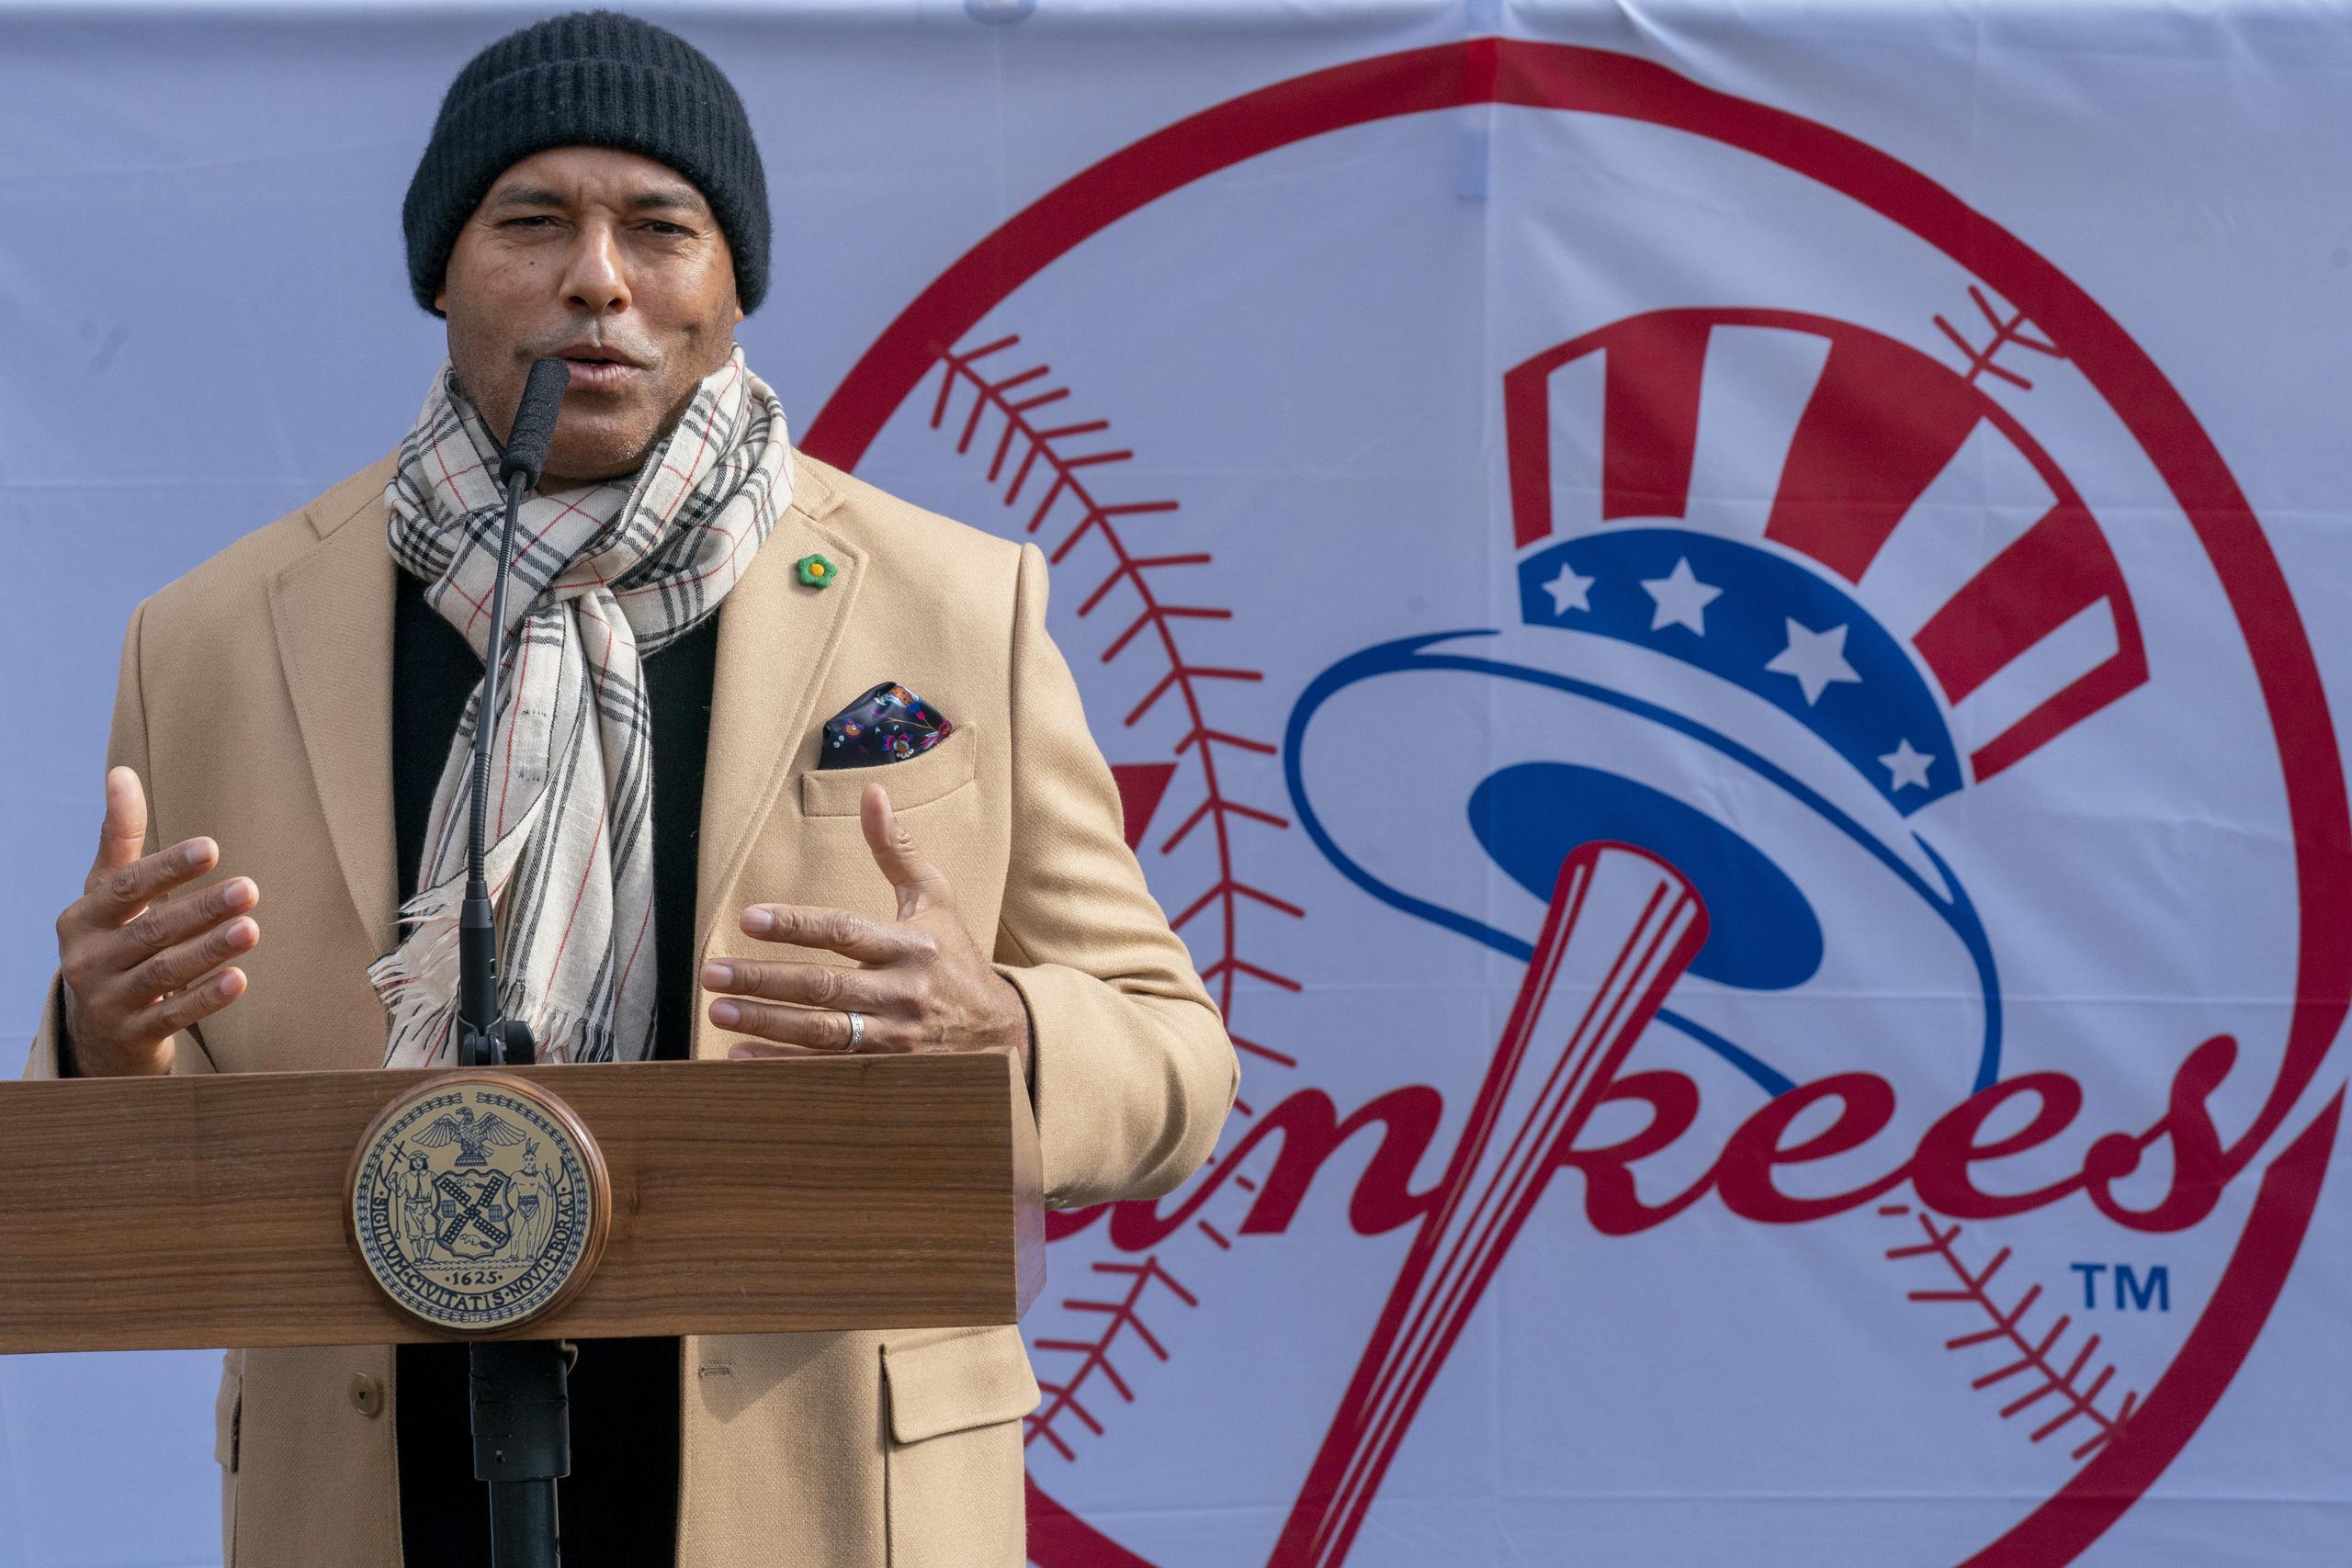 El exlanzador panameño Mariano Rivera, que jugó con los Yankees toda su carrera profesional, se sumó a la iniciativa para apoyar a la comunidad latina "como hicieron ellos conmigo en el pasado". 